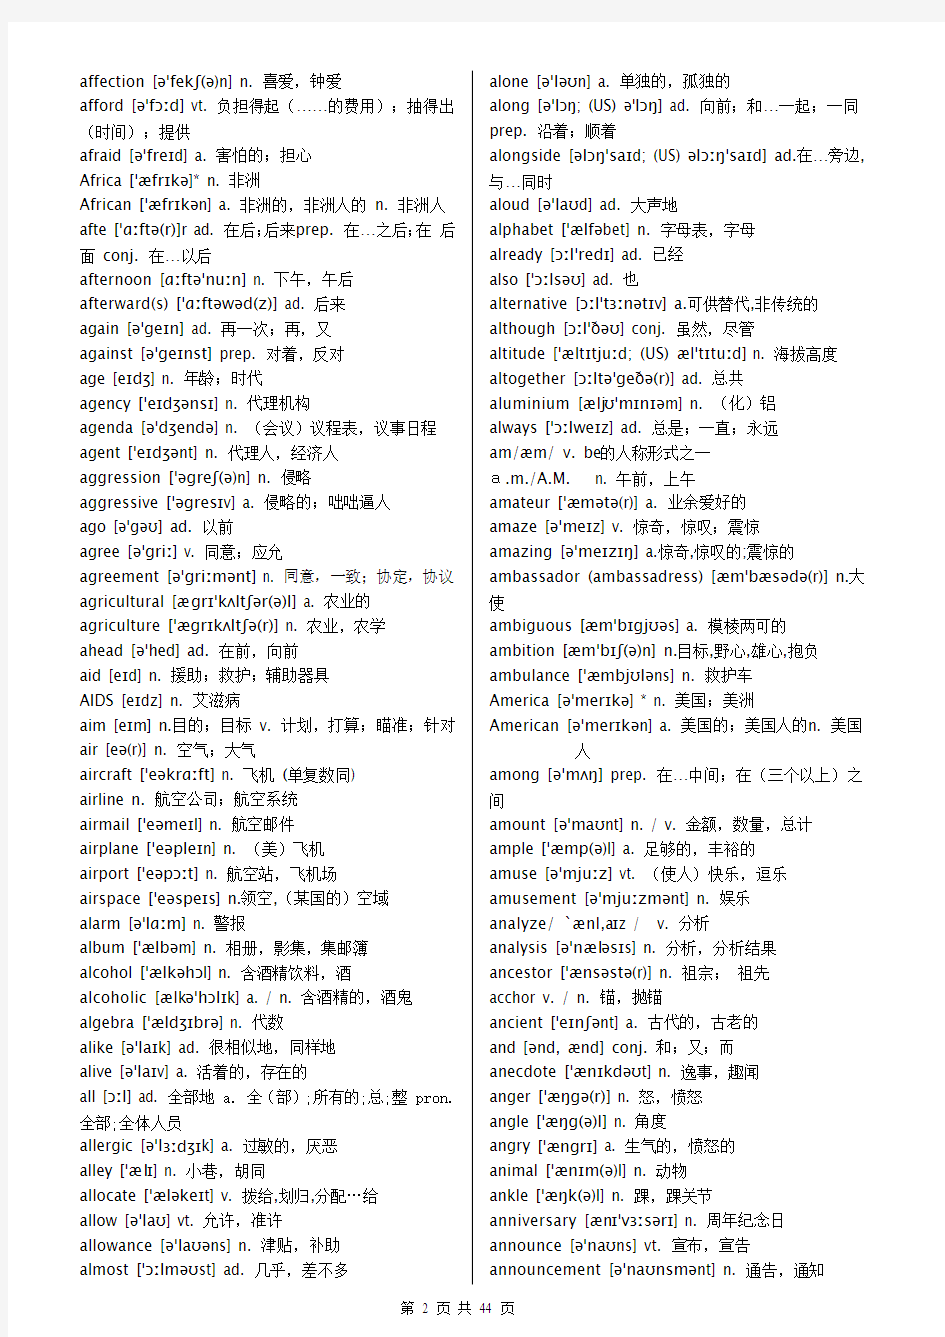 高中英语词汇3500词(必背)有音标完整版